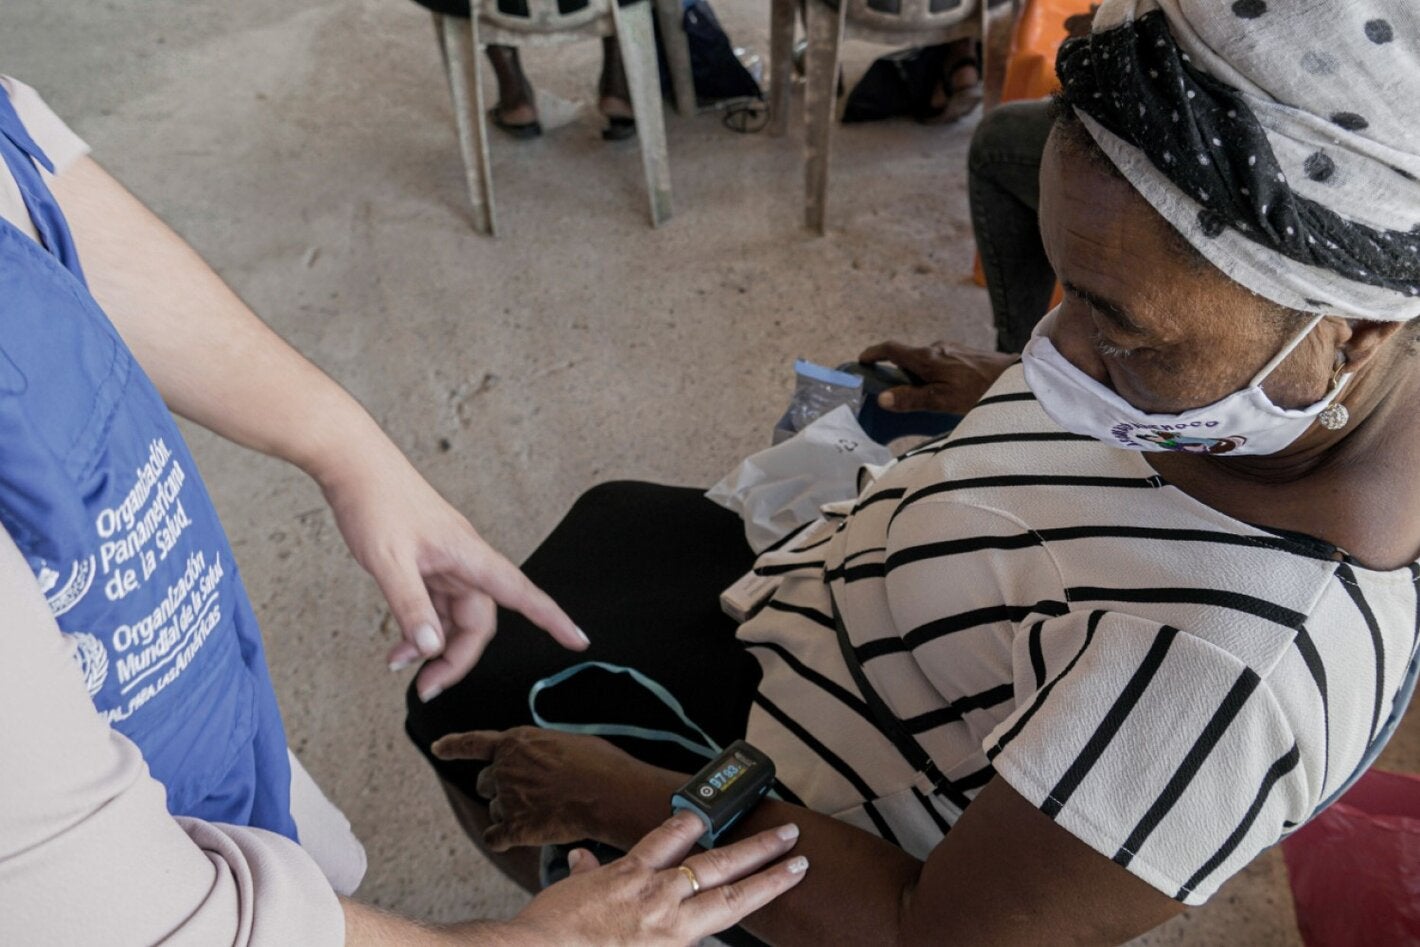 Una partera del Chocó, en el Pacífico colombiano, recibe capacitación por parte de la OPS sobre uso de herramientas biomédicas para complementar prácticas ancestrales.